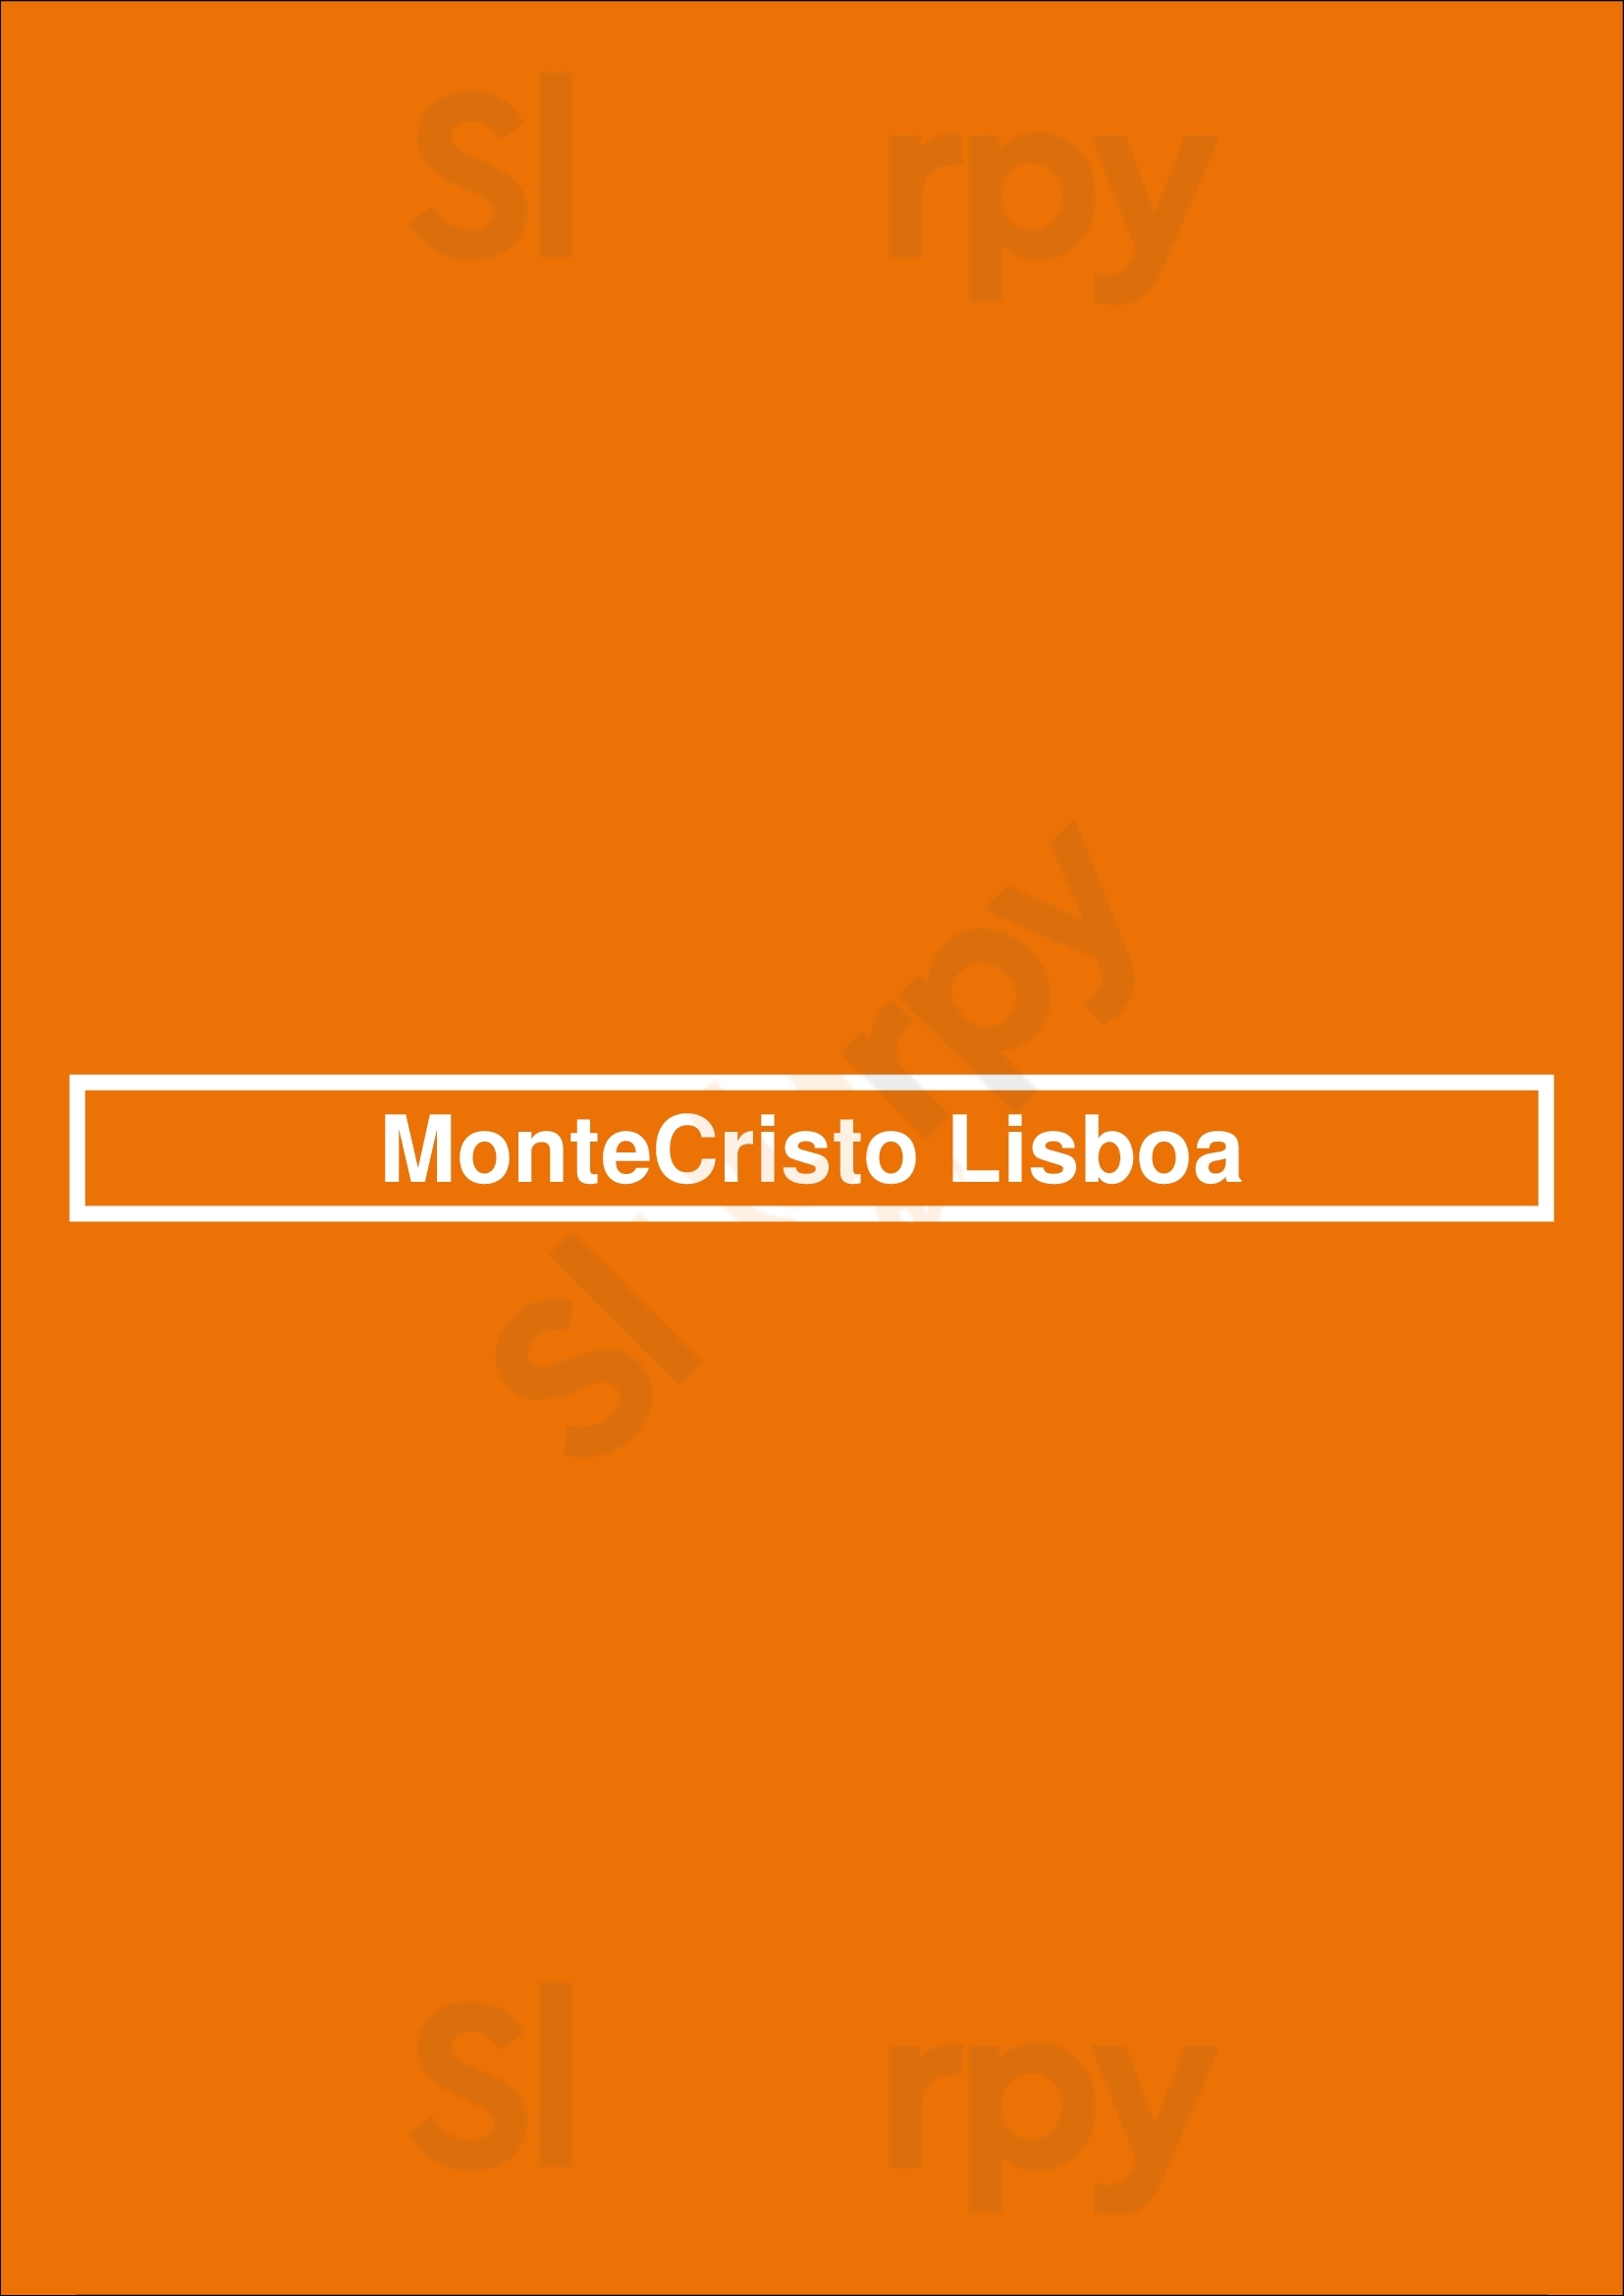 Montecristo Lisboa Lisboa Menu - 1